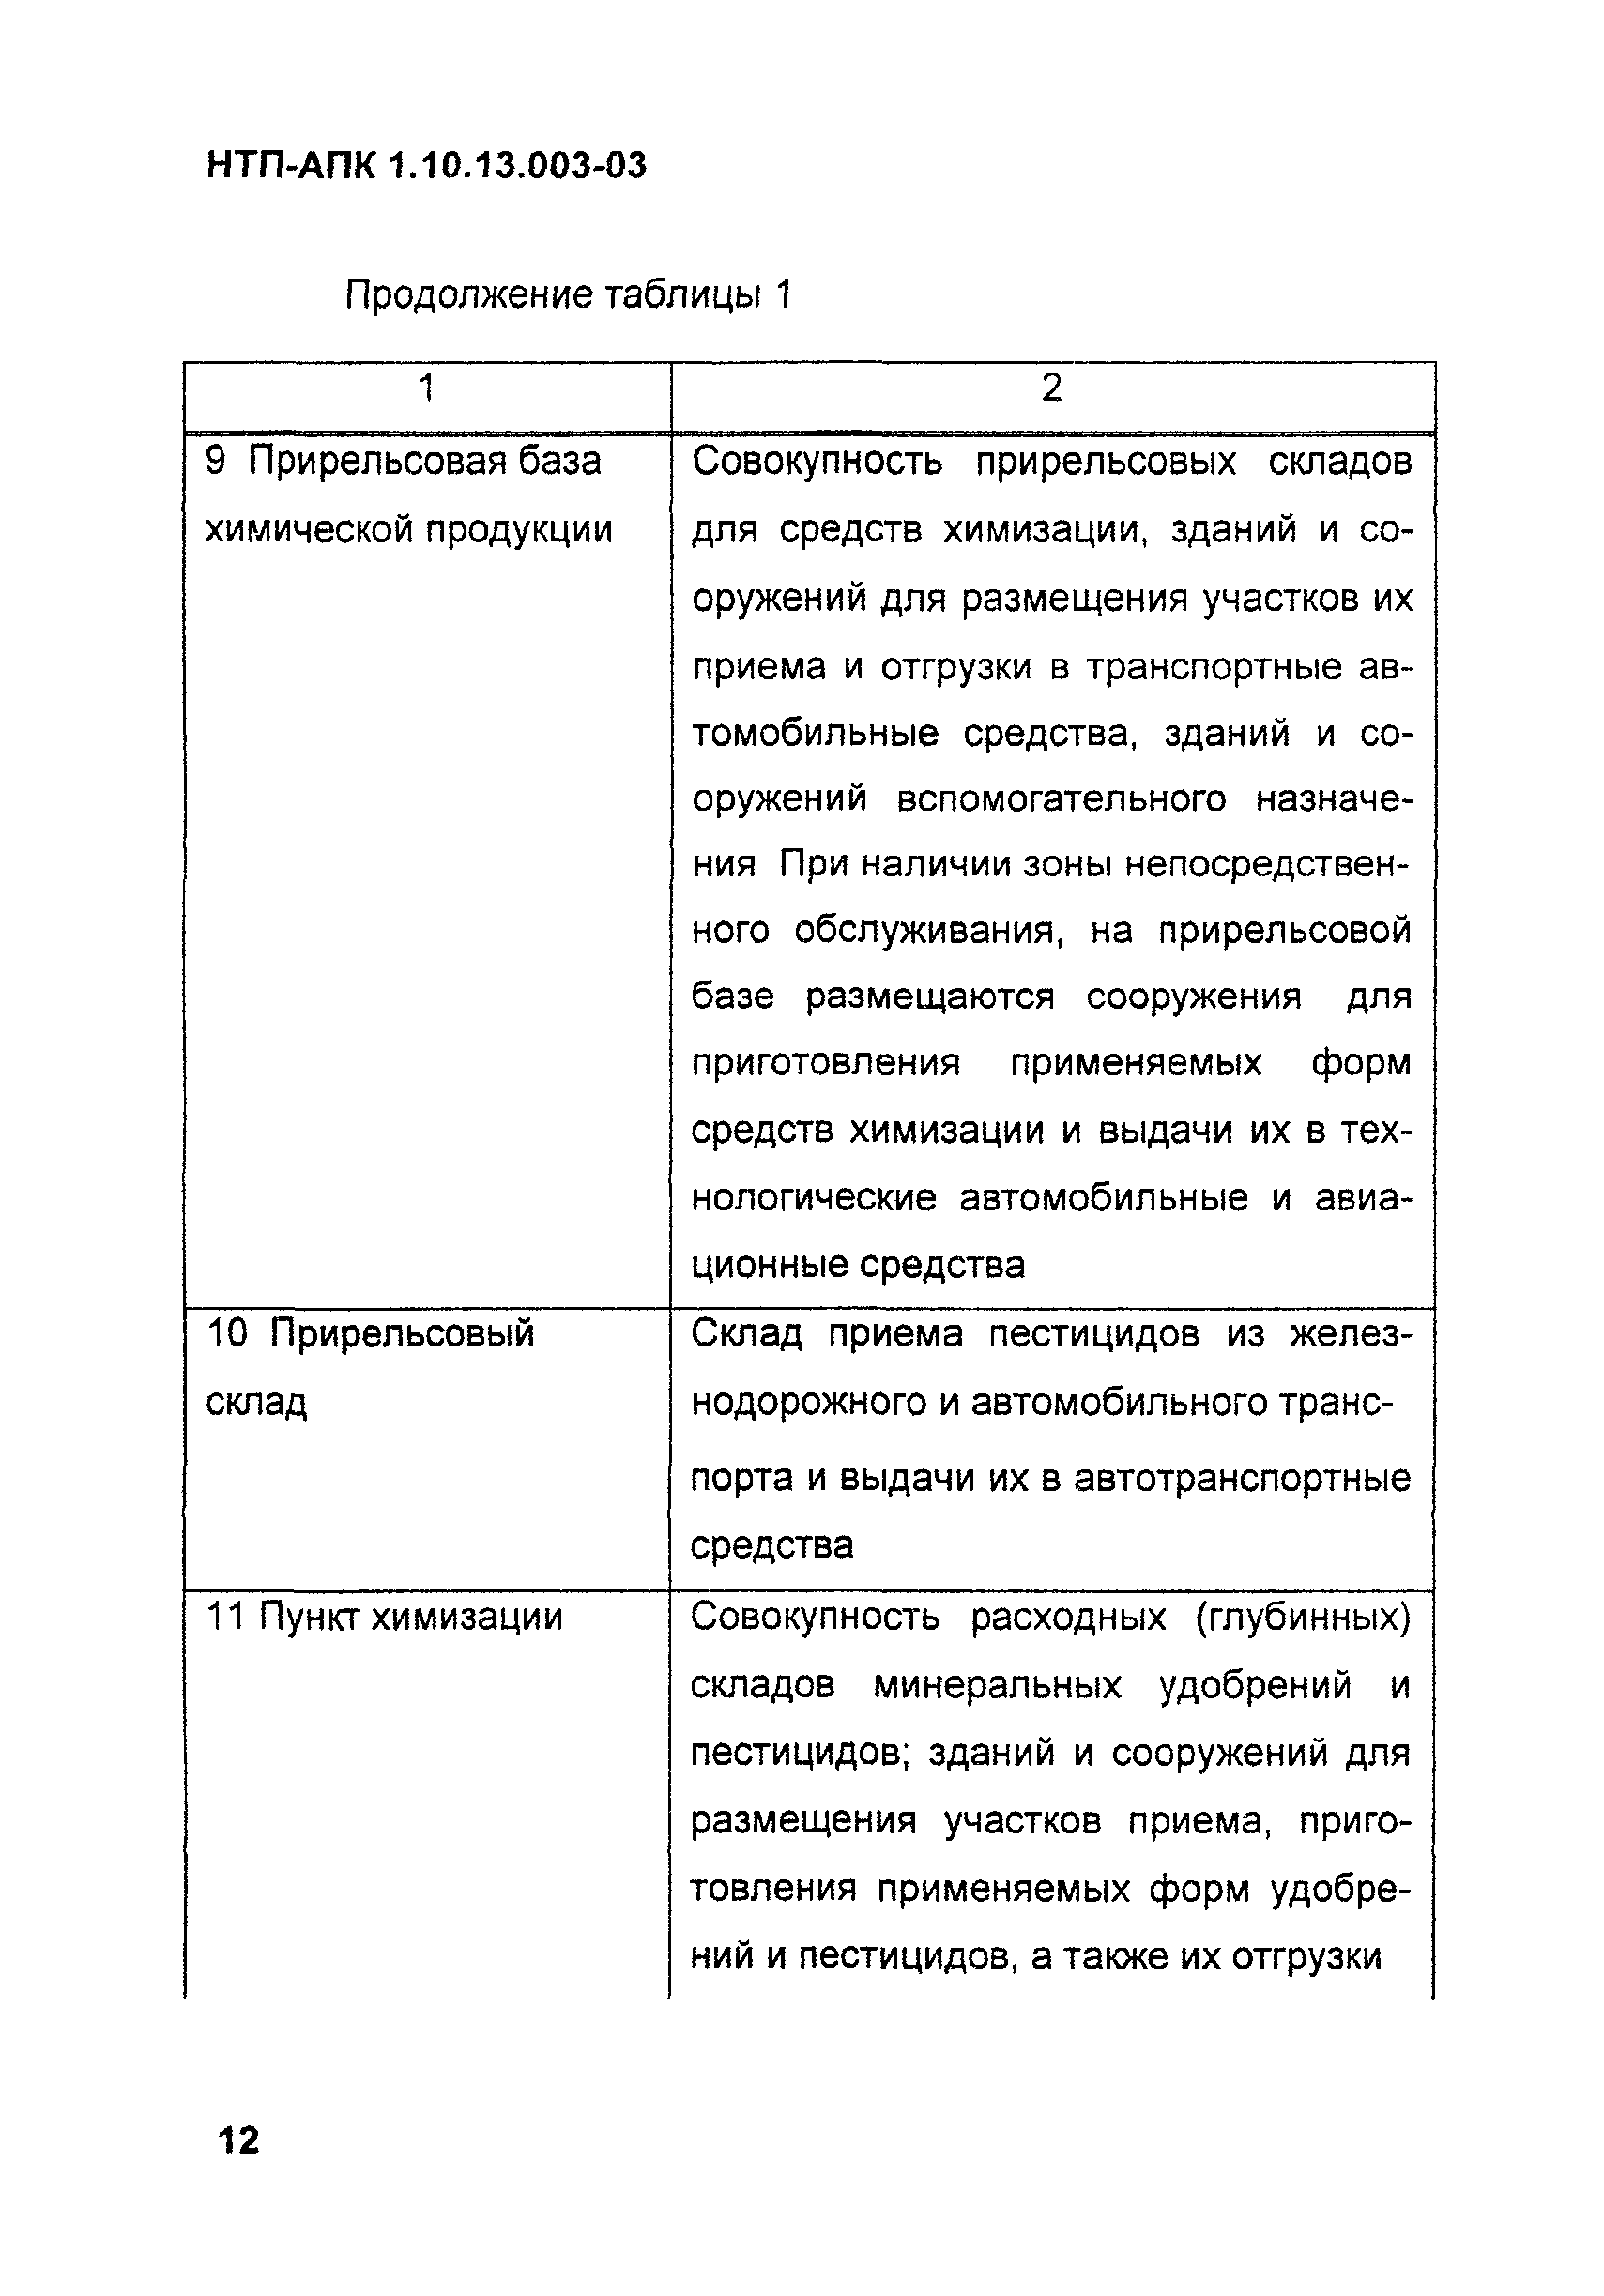 НТП АПК 1.10.13.003-03